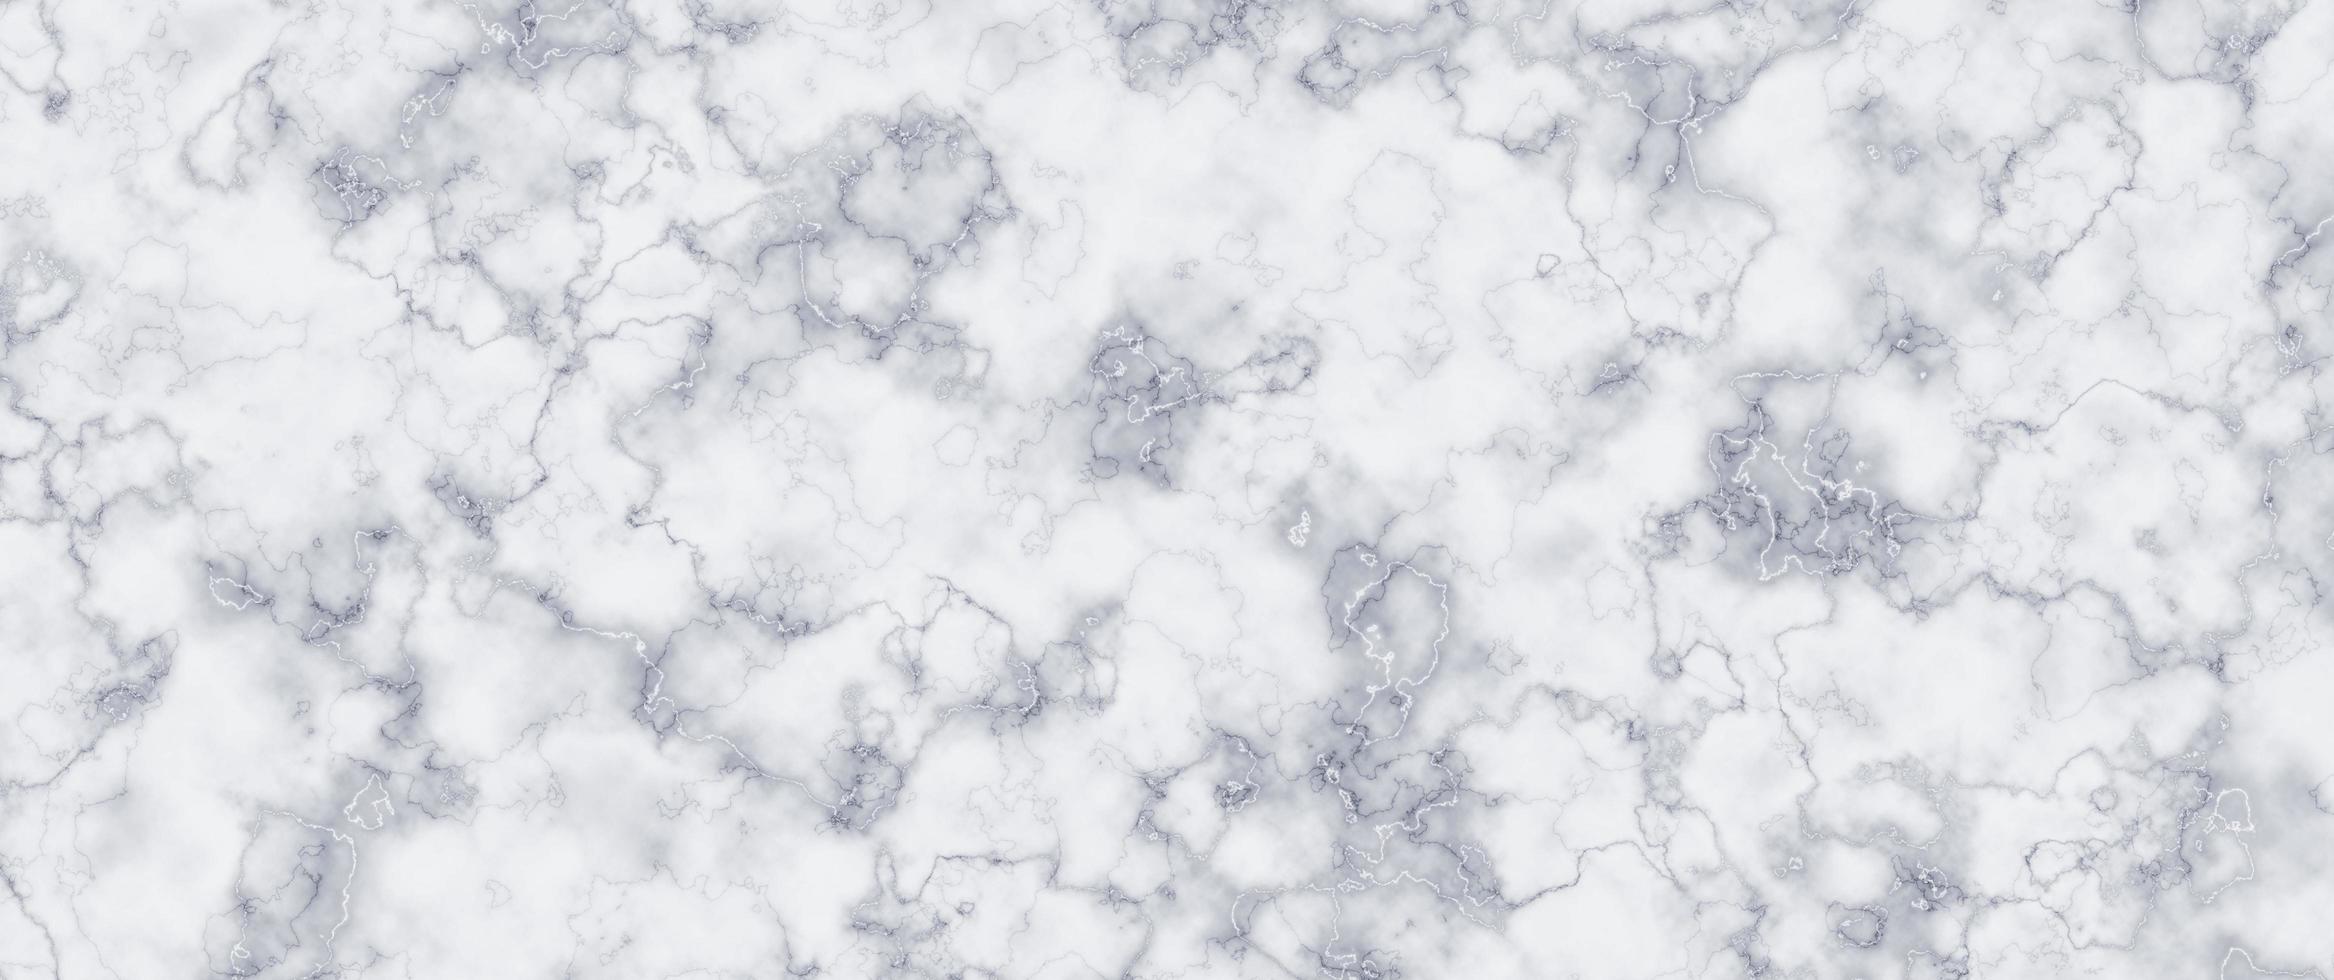 fausse pierre de marbre. abstrait de texture de marbre photo